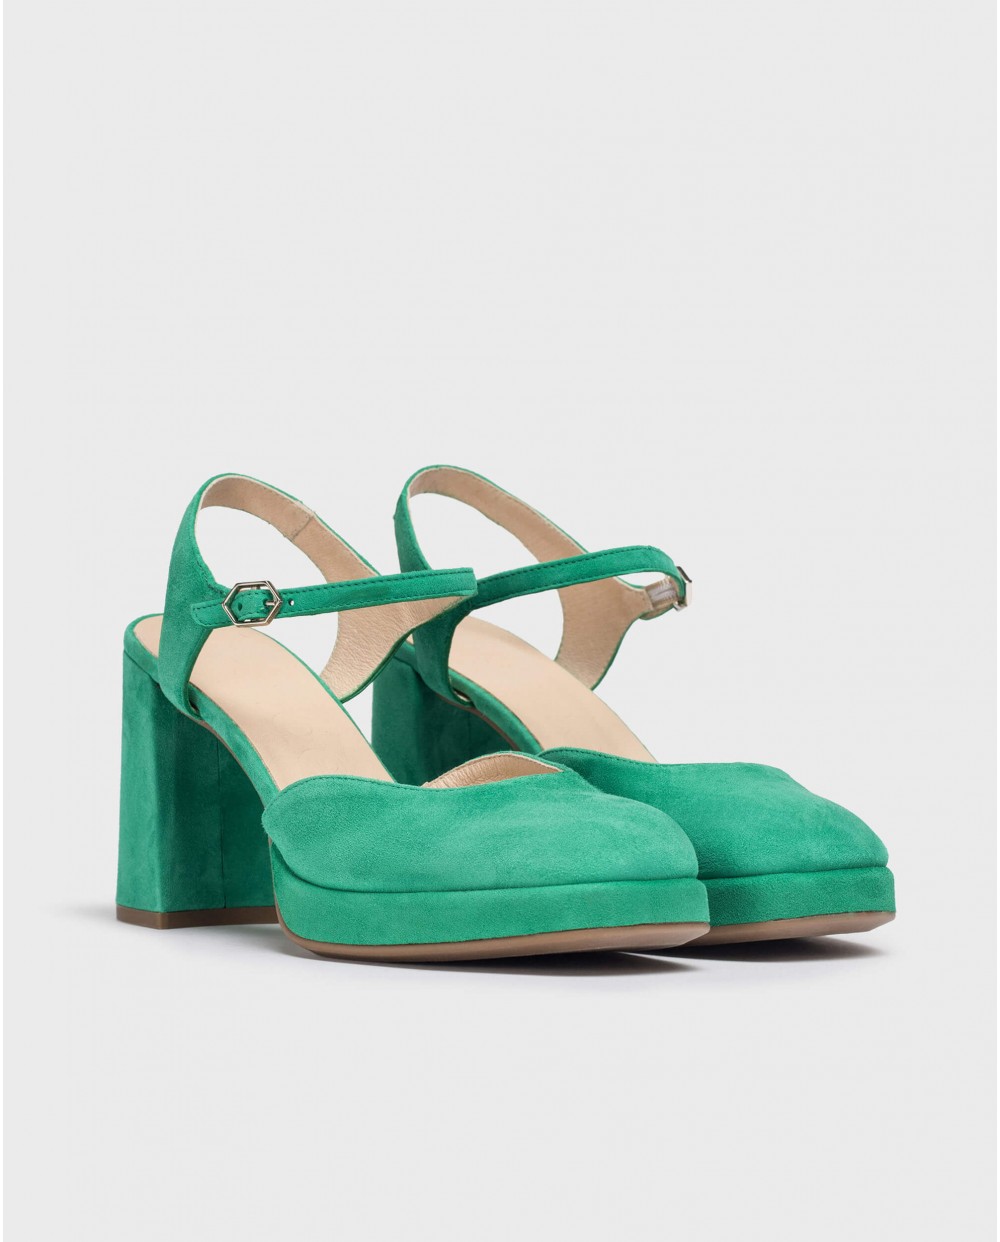 Wonders-Heels-Green Blue Shoes